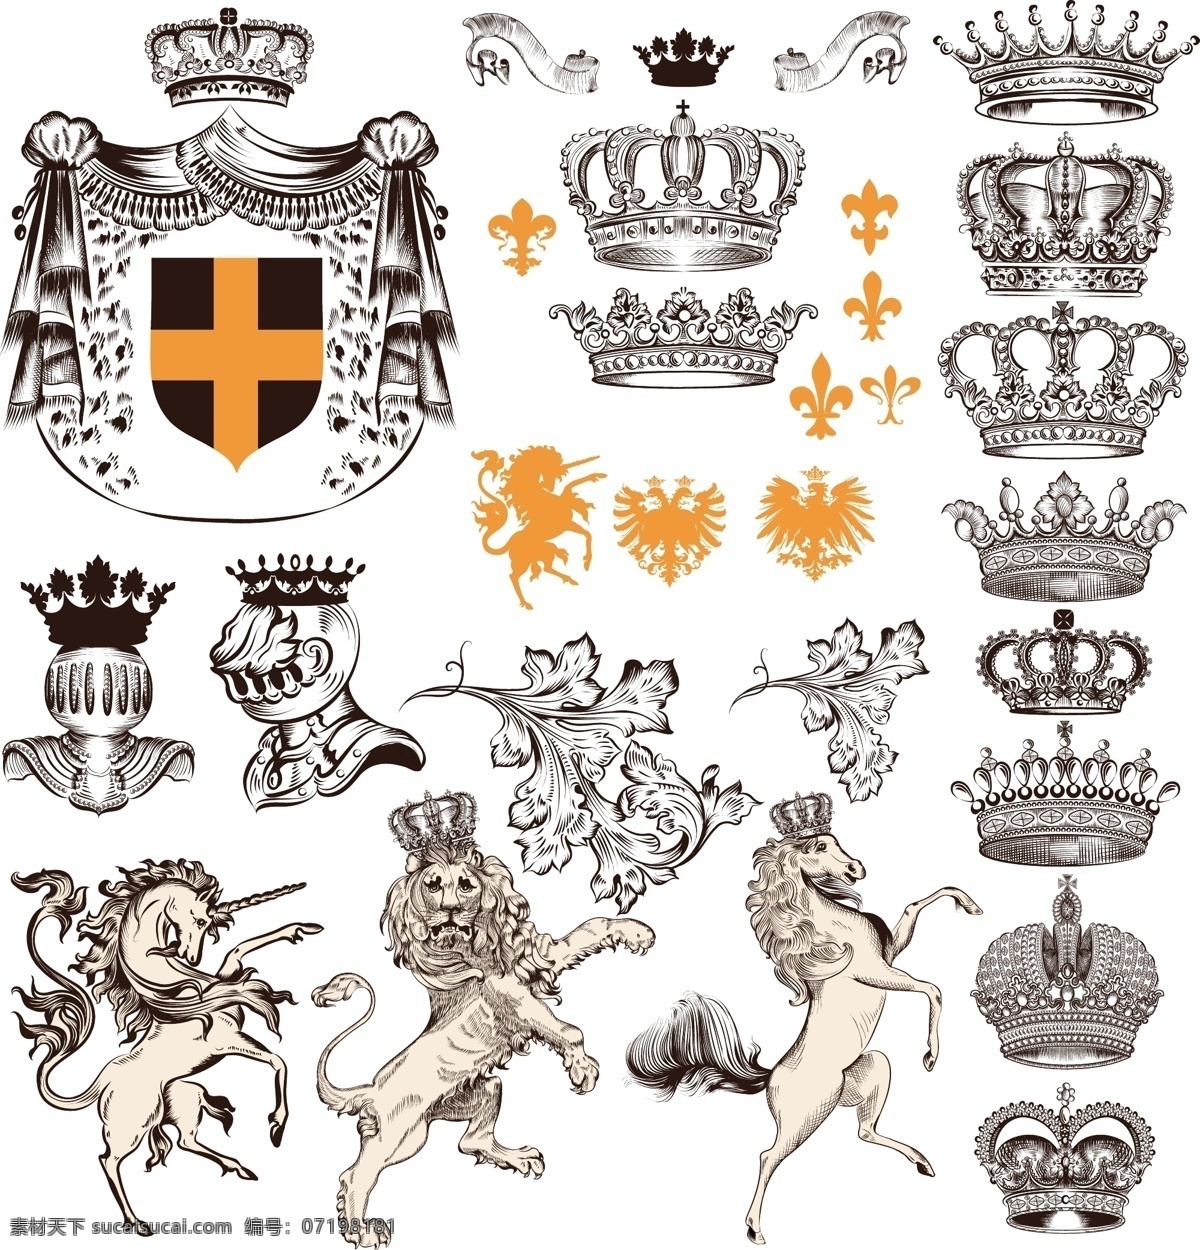 古典 中世纪 元素 矢量 盾牌 皇冠 王冠 狮子 背景 边框 花边 传统 花纹 图案 生活百科 白色